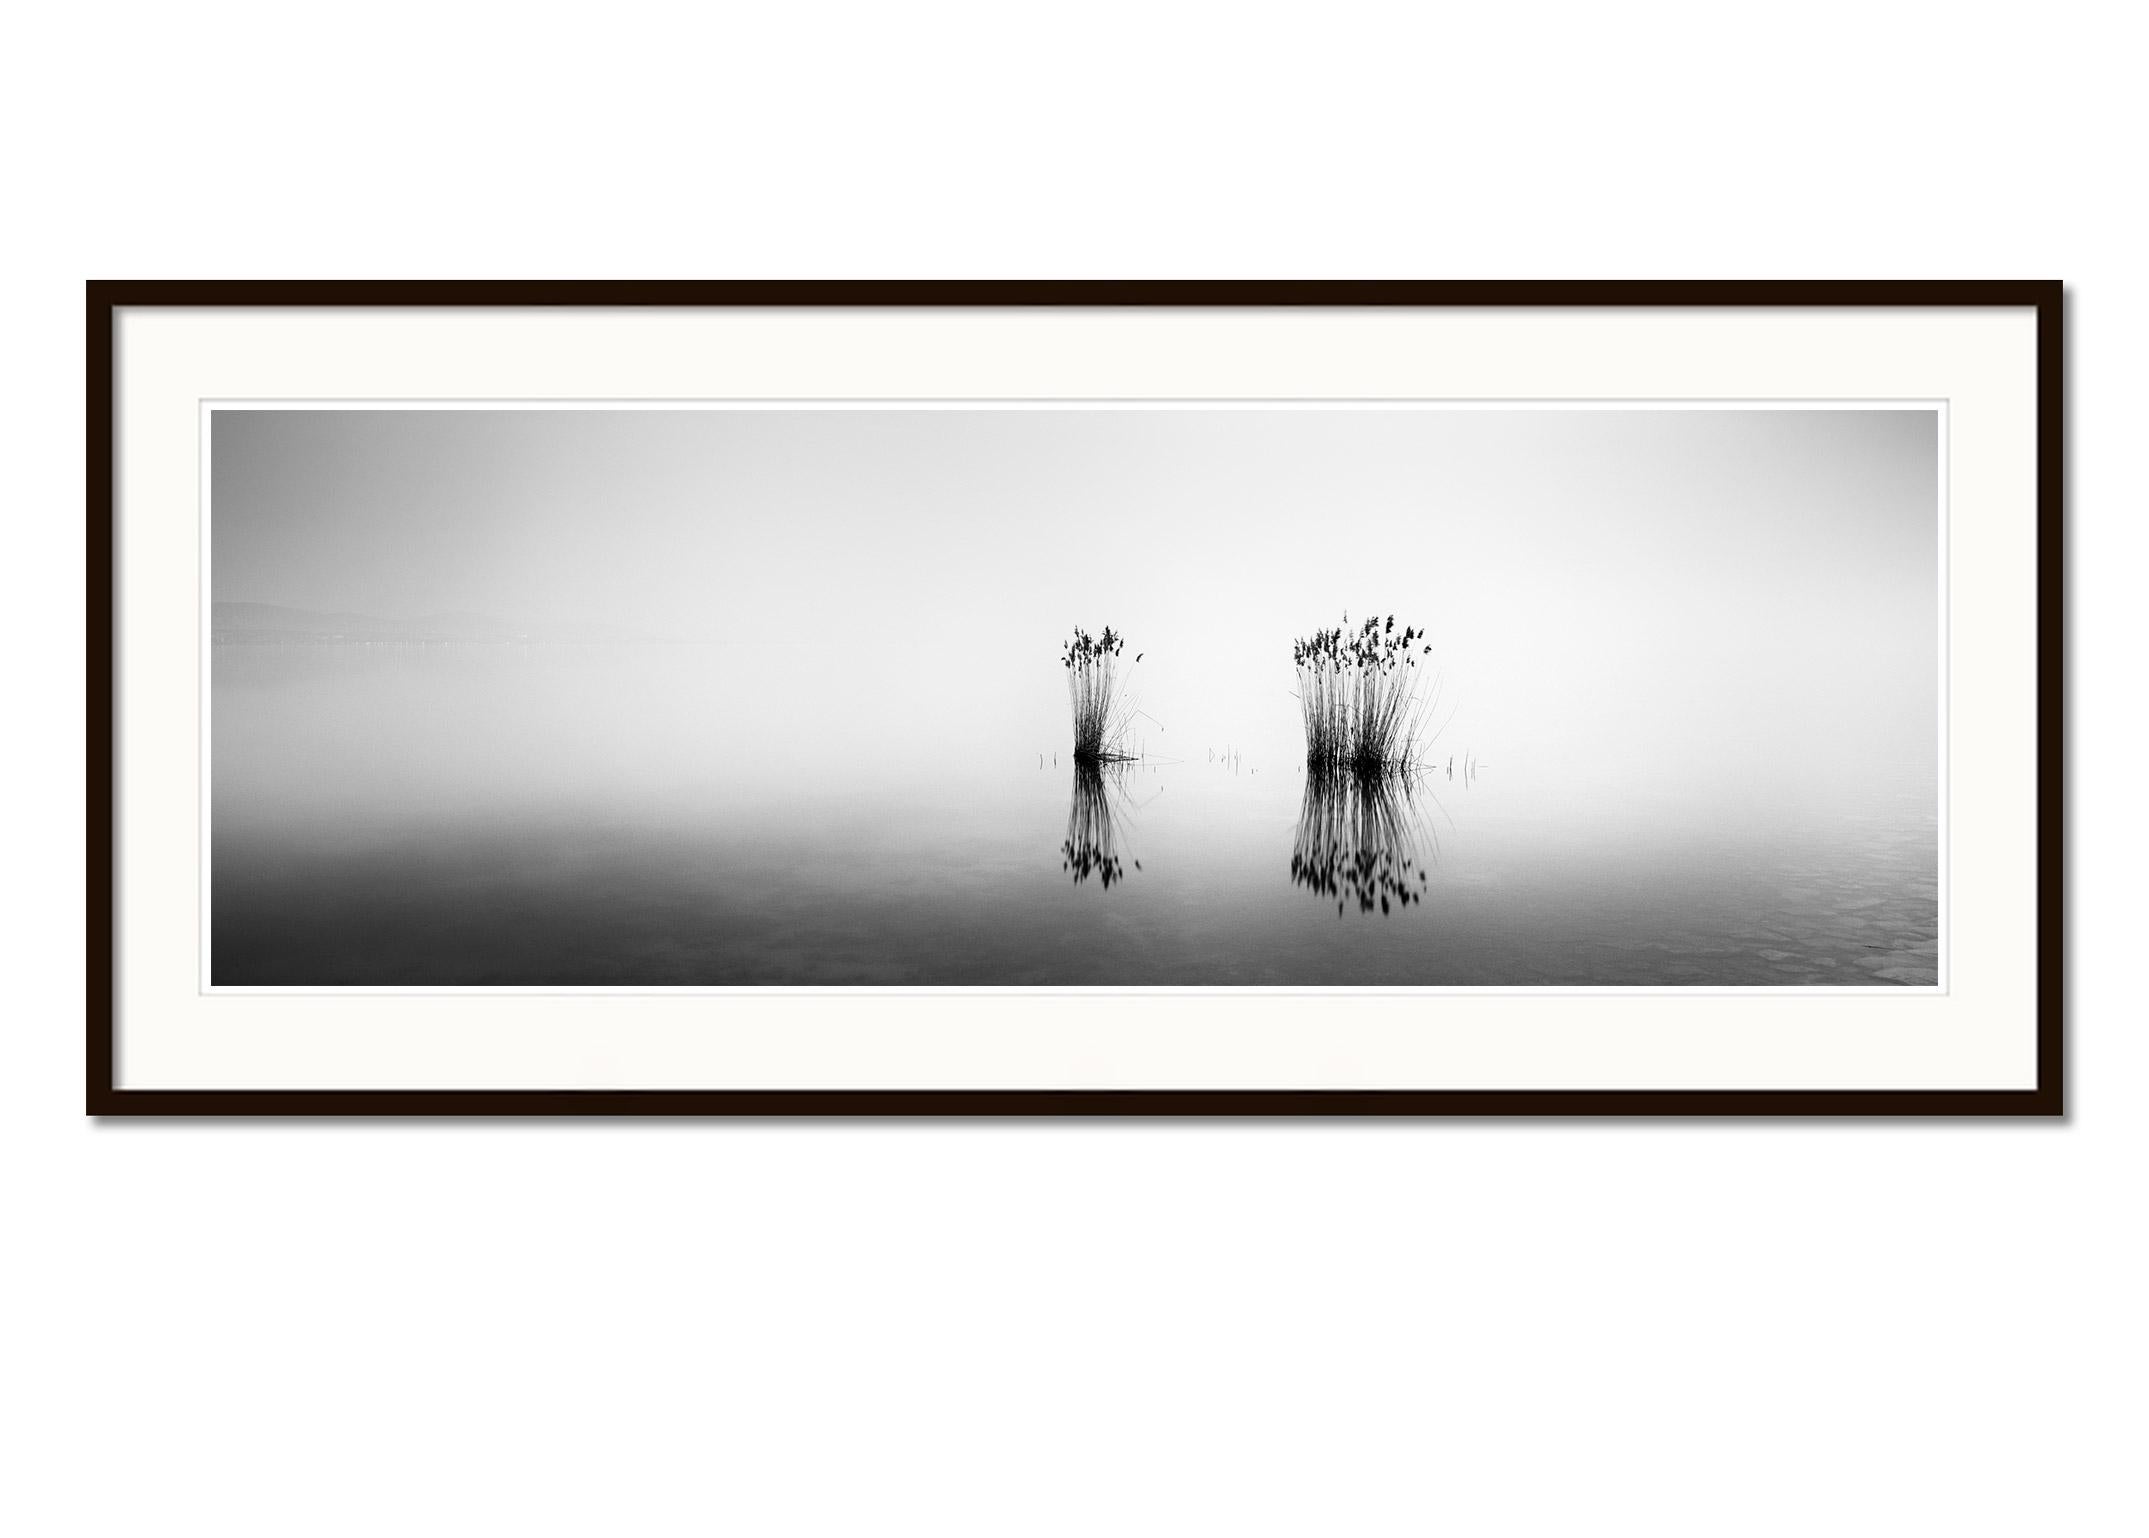 Phragmites Panorama minimalisme noir et blanc longue exposition photographie de paysage aquatique - Gris Landscape Photograph par Gerald Berghammer